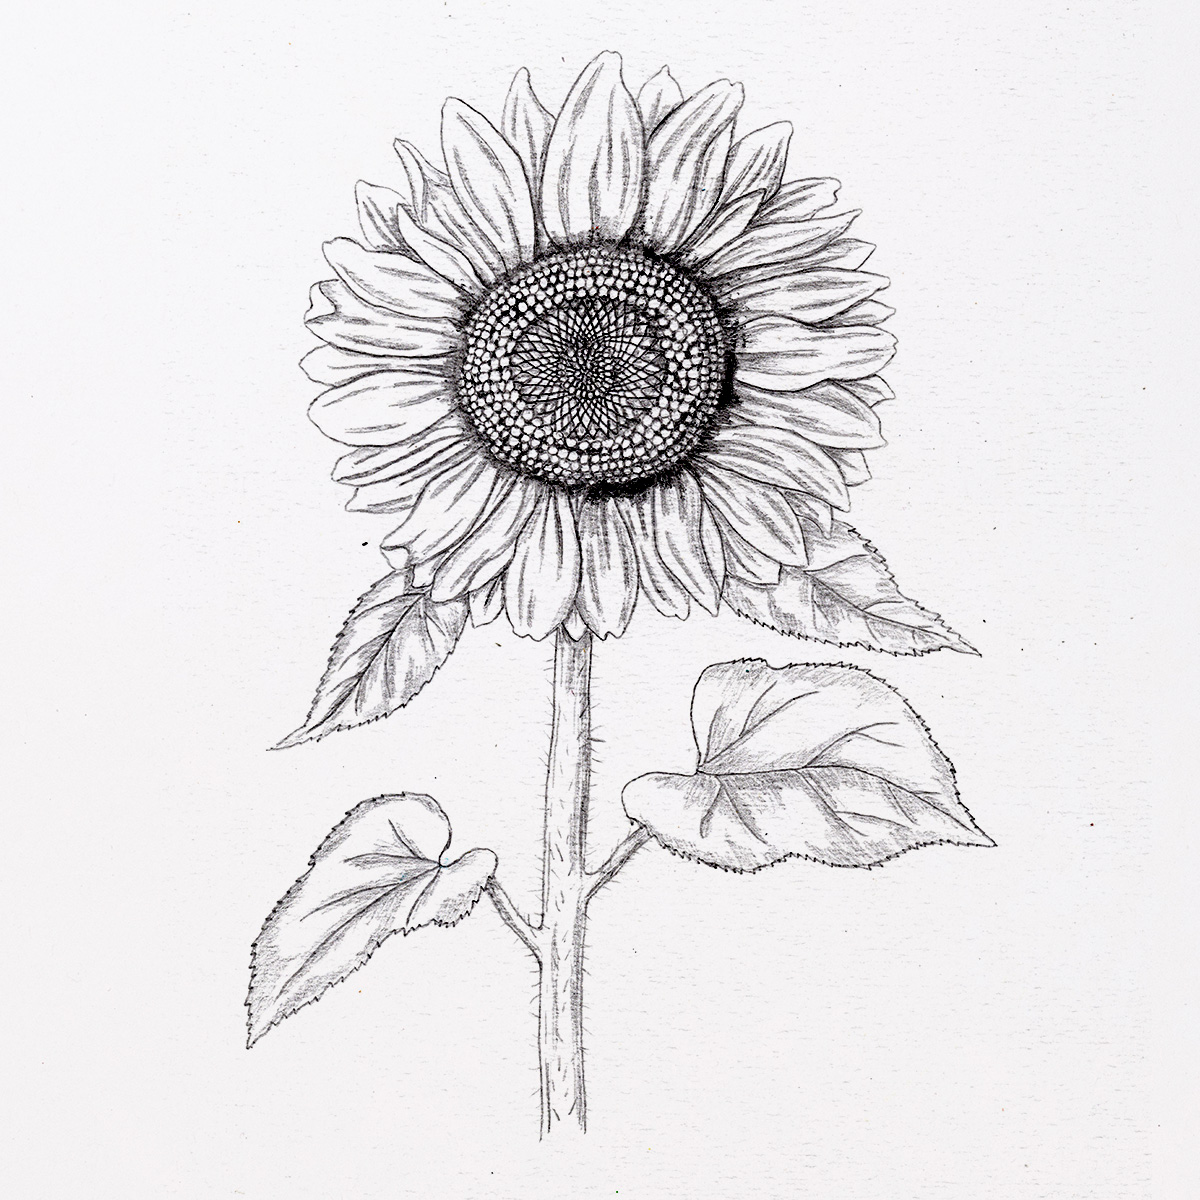 Sunflower Drawing - ReusableArt.com